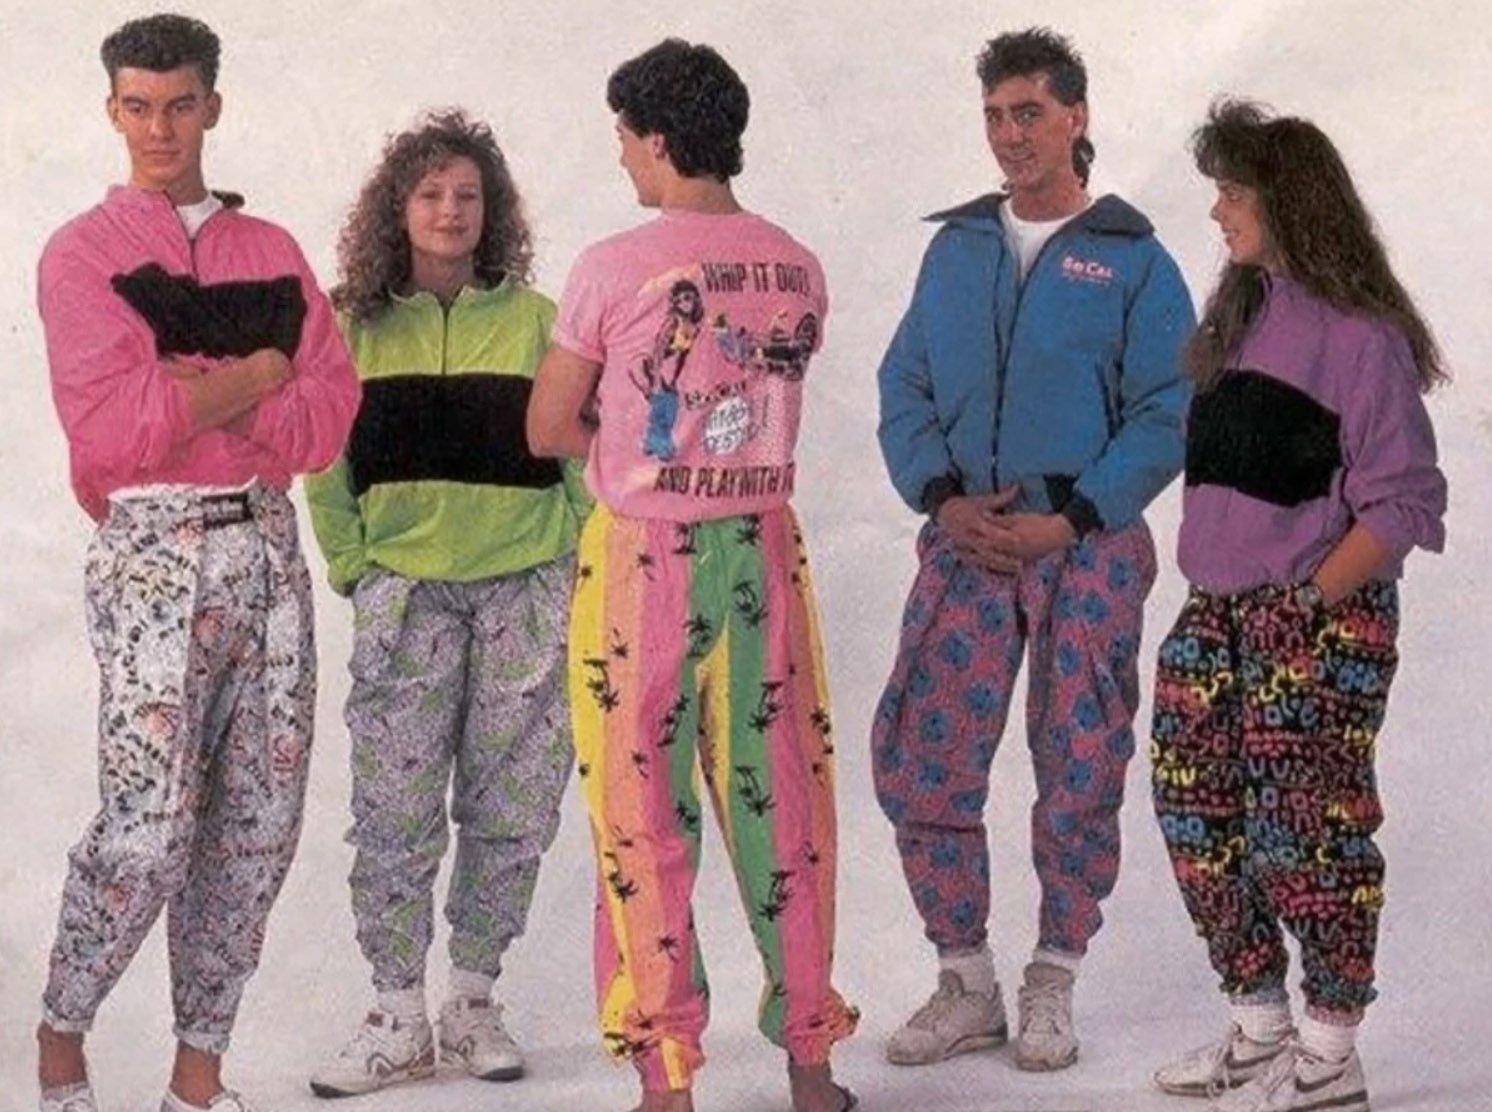 1990 е мода. 80-Е Америка мода. Штаны бананы 90-х. Мода 1980 Америка.